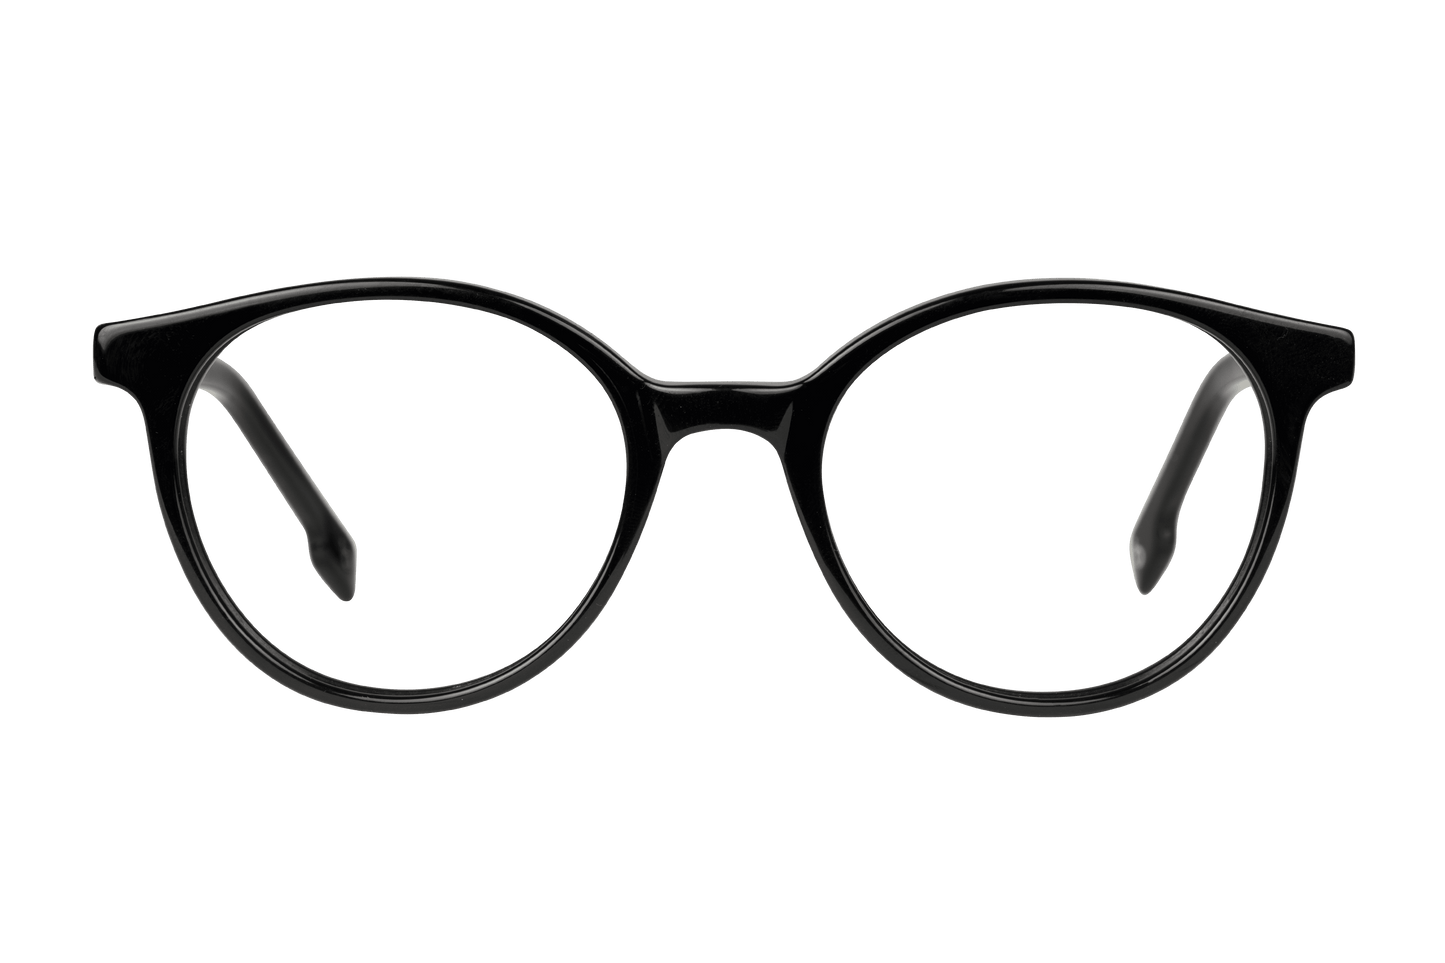 FLORA NOIR - lunettespourtous